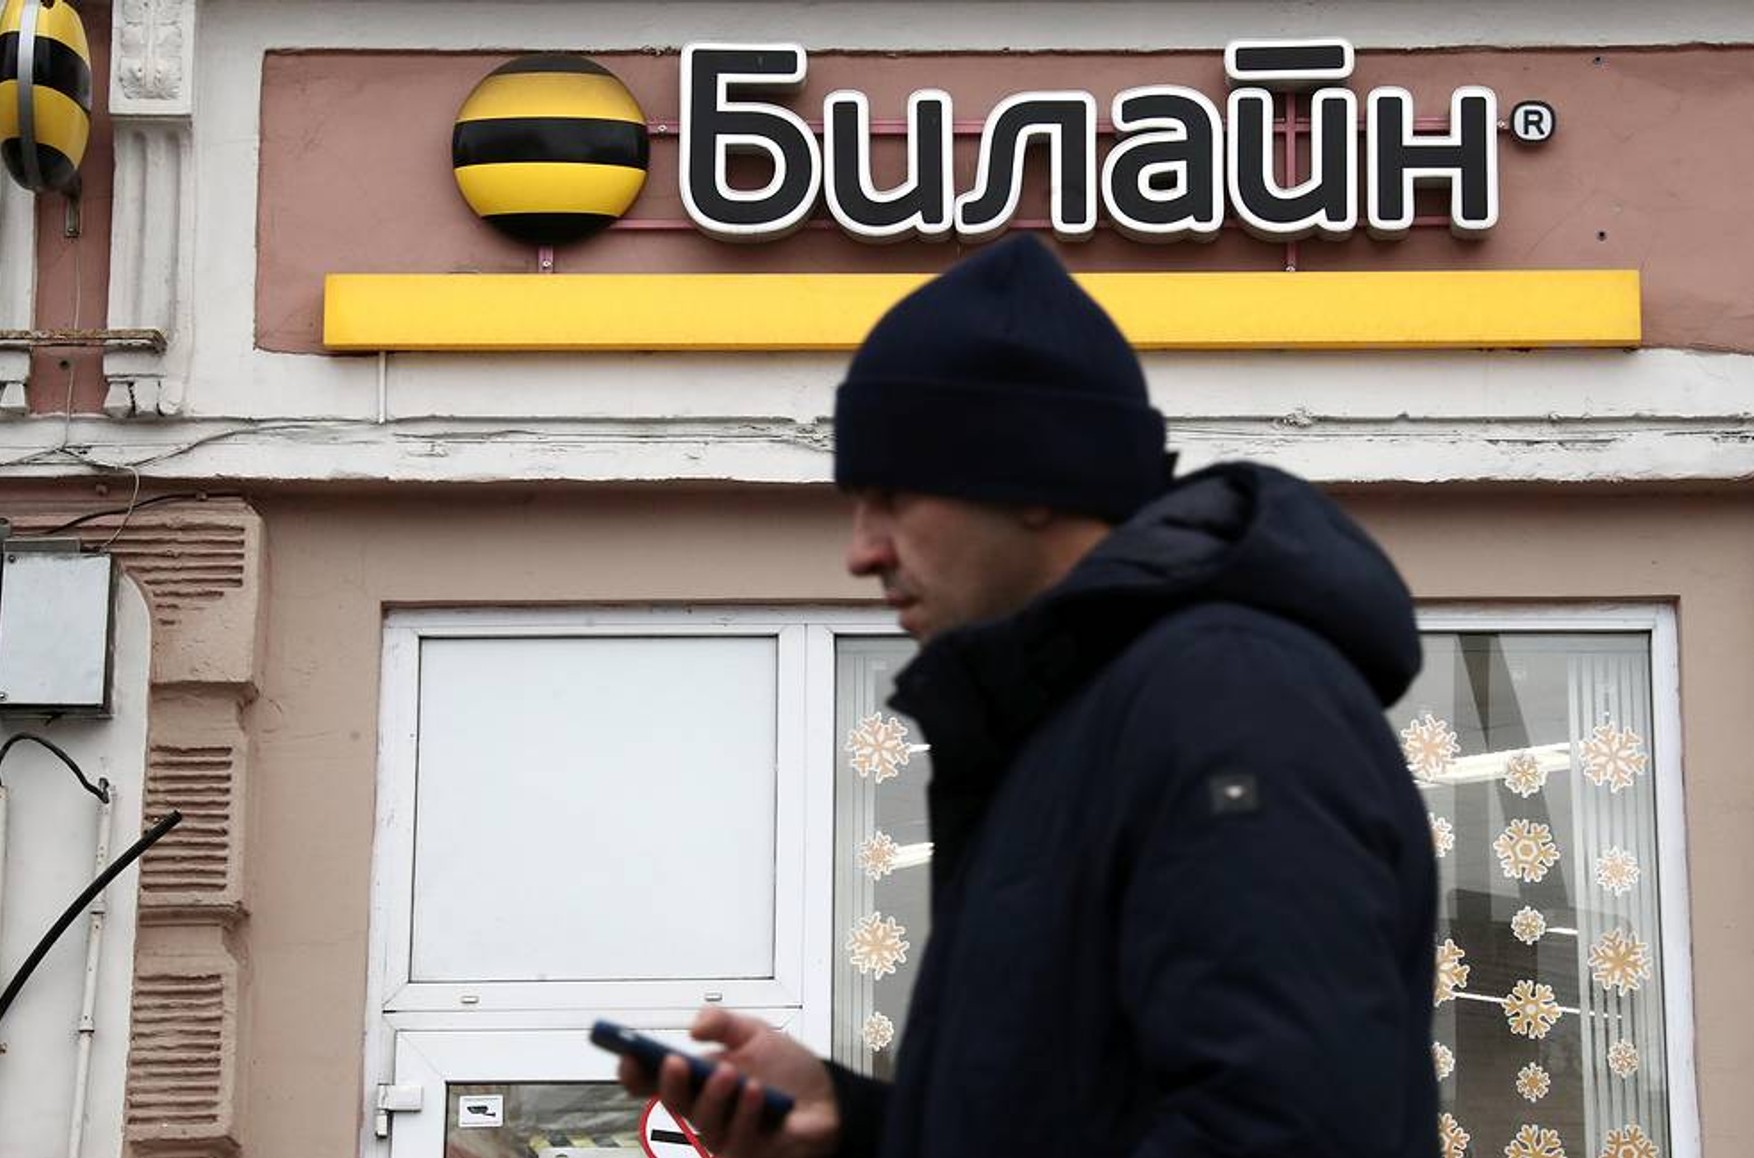 У великих містах Росії повідомляють про збої в роботі мобільних операторів. «Білайн» стверджує, що проблем зі зв'язком немає